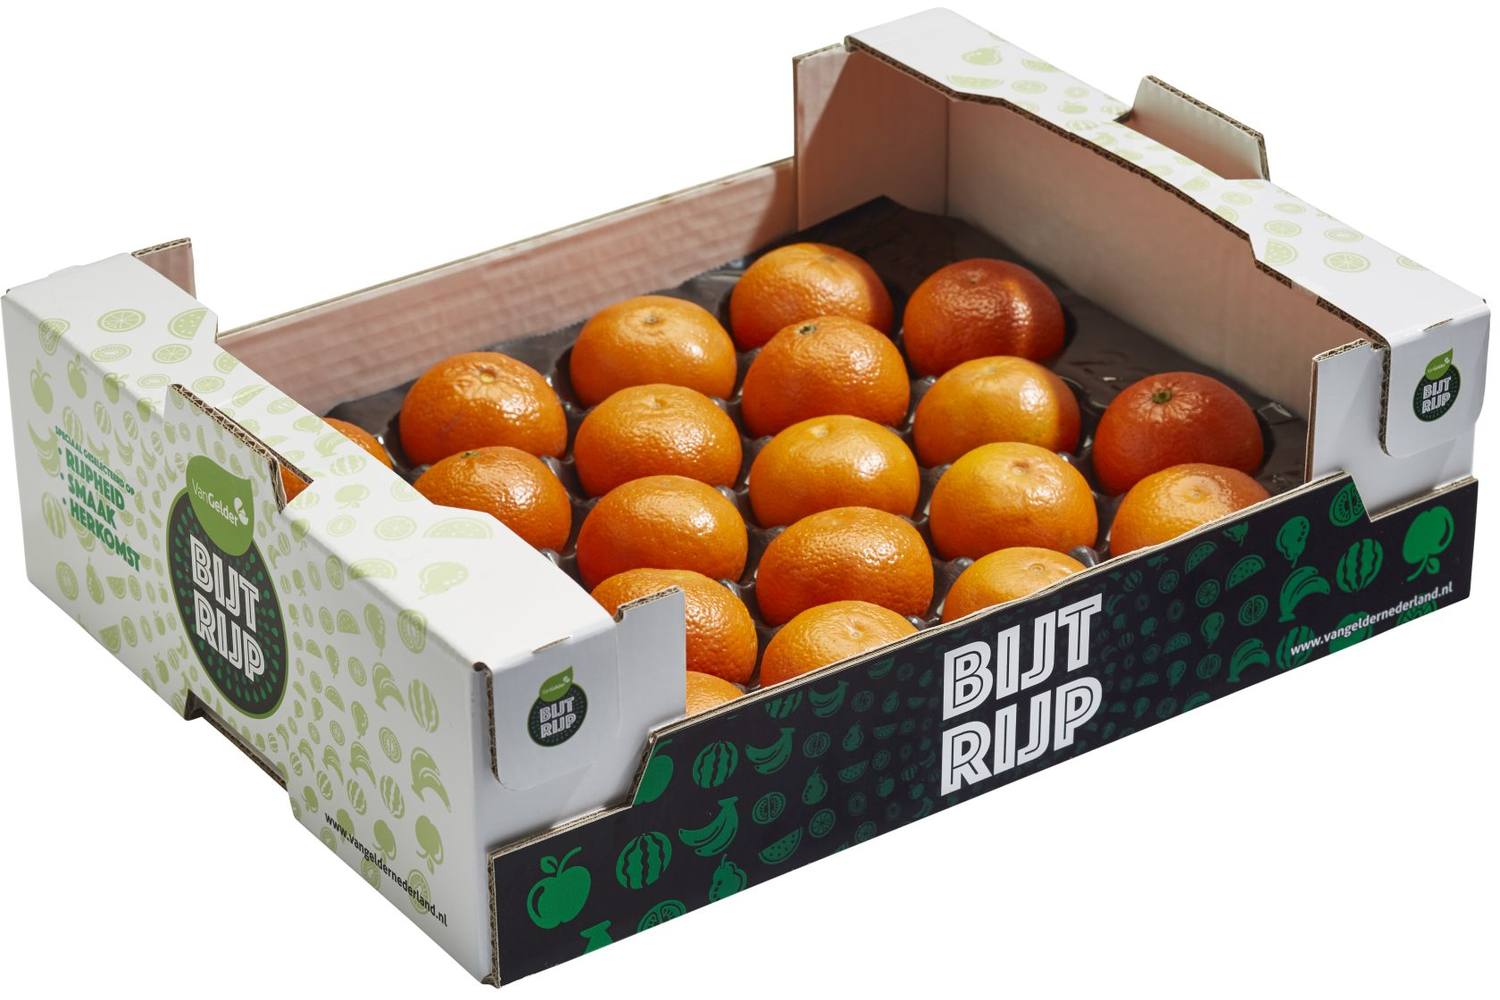 BijtRijp mandarijnen kist 22 stuks 1